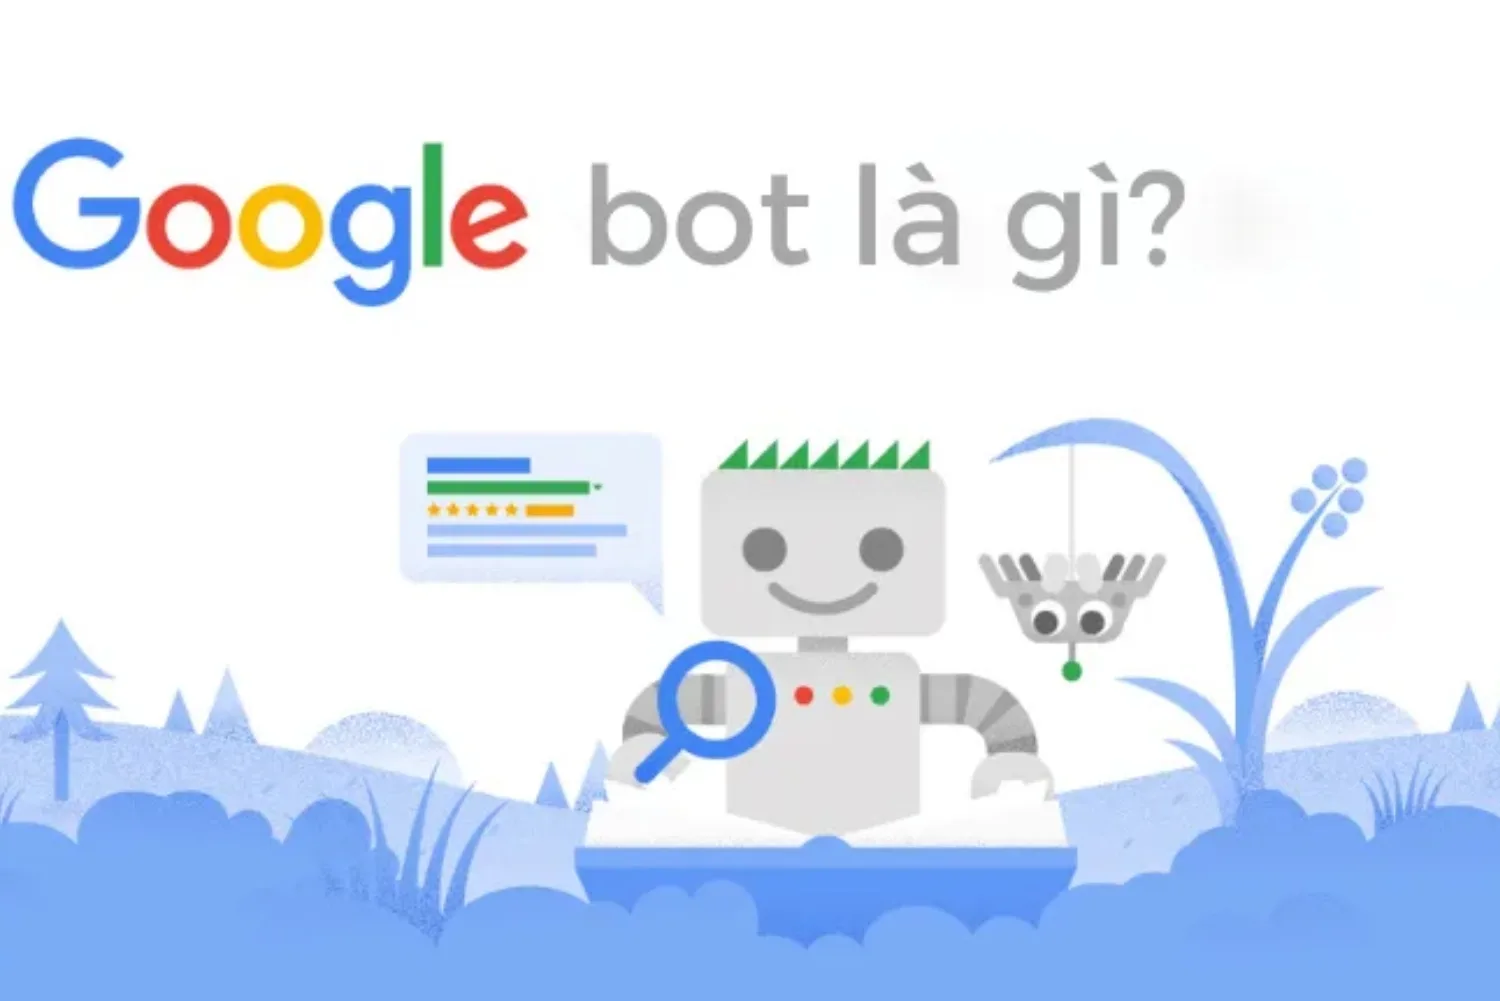 Google Bot là gì?